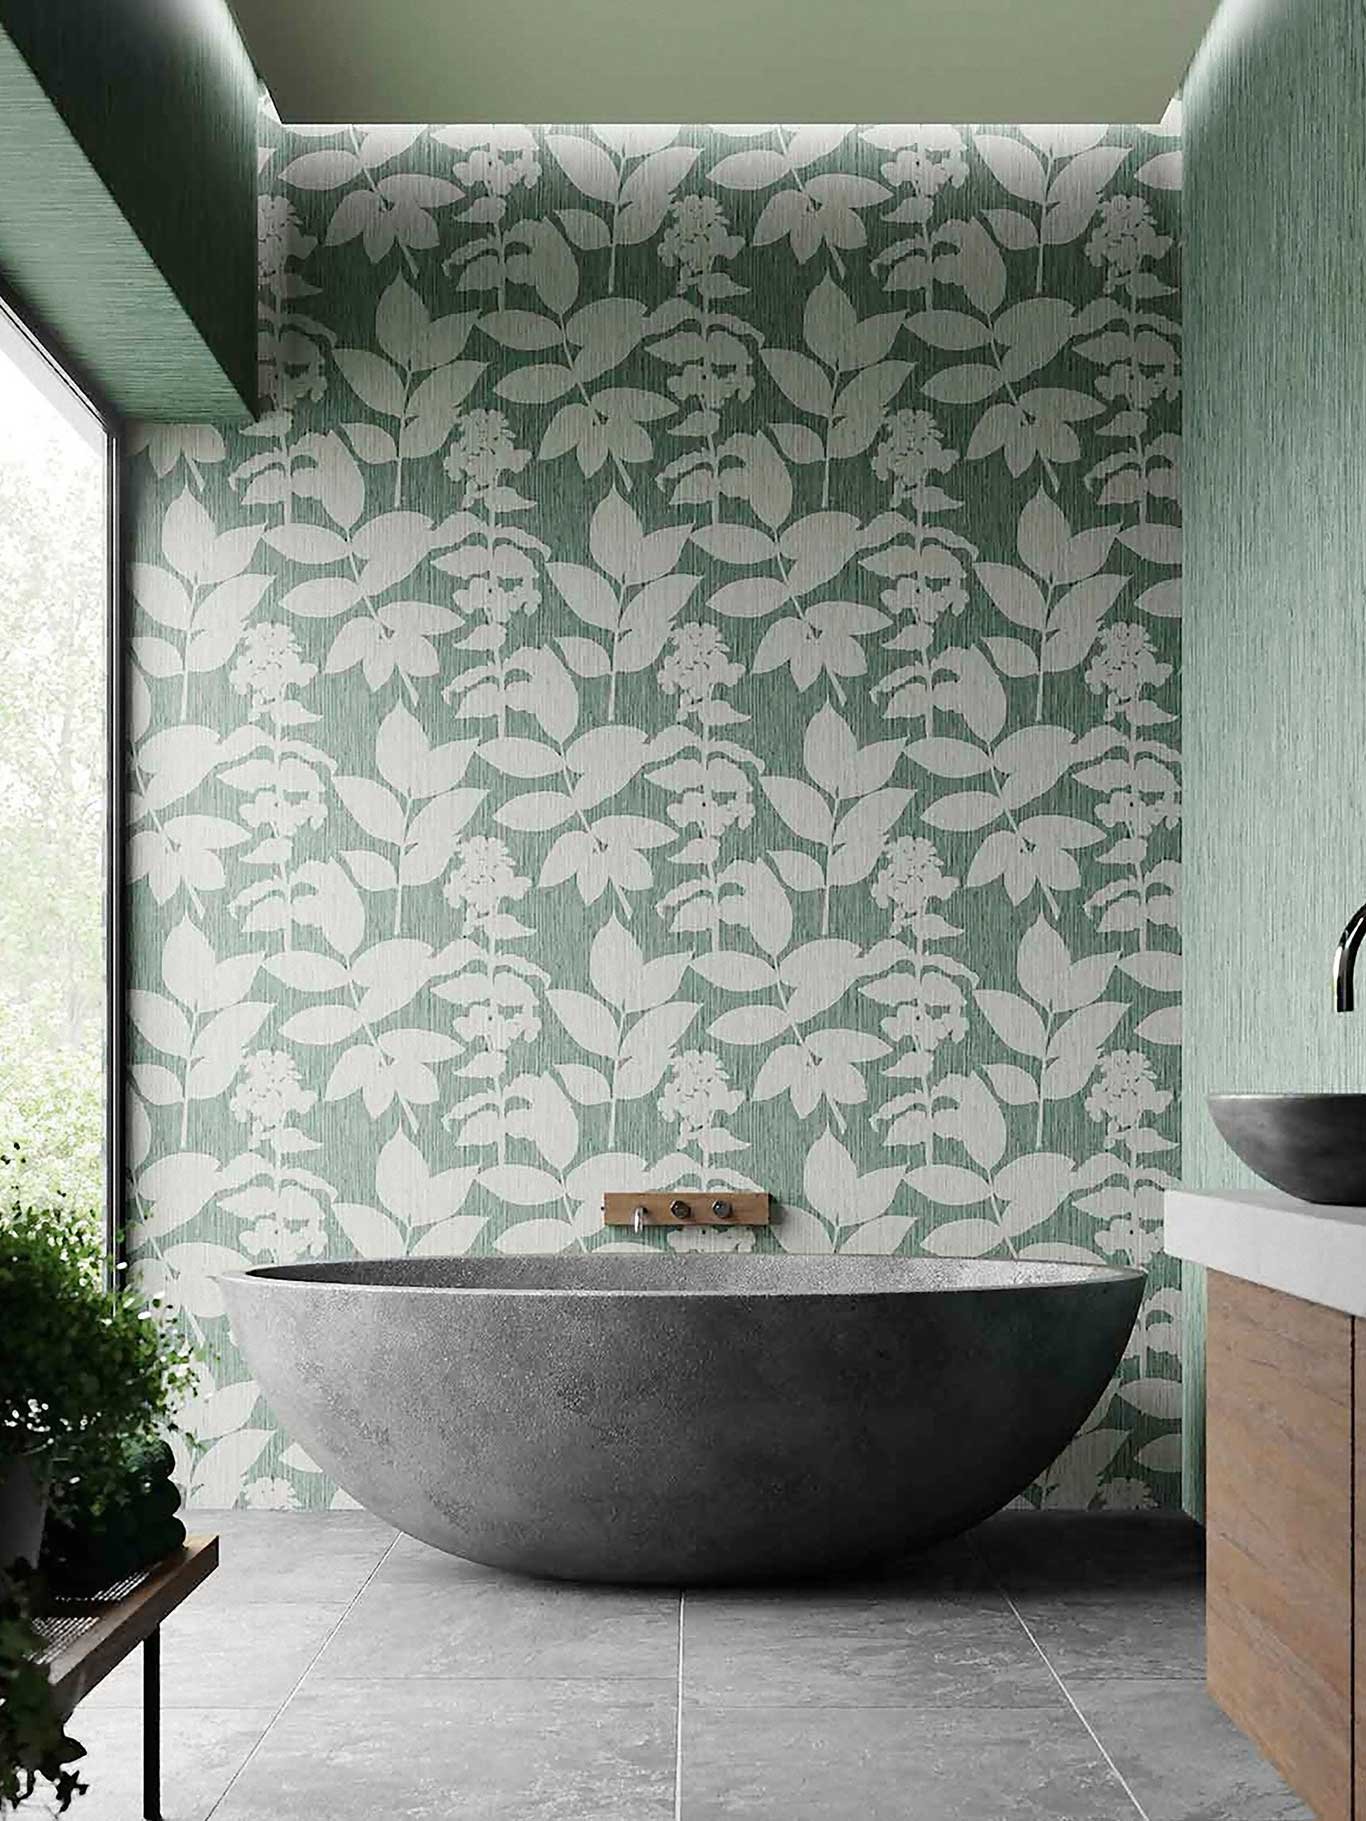 Calm Me Down Das Wallpaper »Aspen Pine« wirkt vor allem in Badezimmerbereichen beruhigend und entspannend. Botanischer Print mit texturierter Oberfläche. grahambrown.com